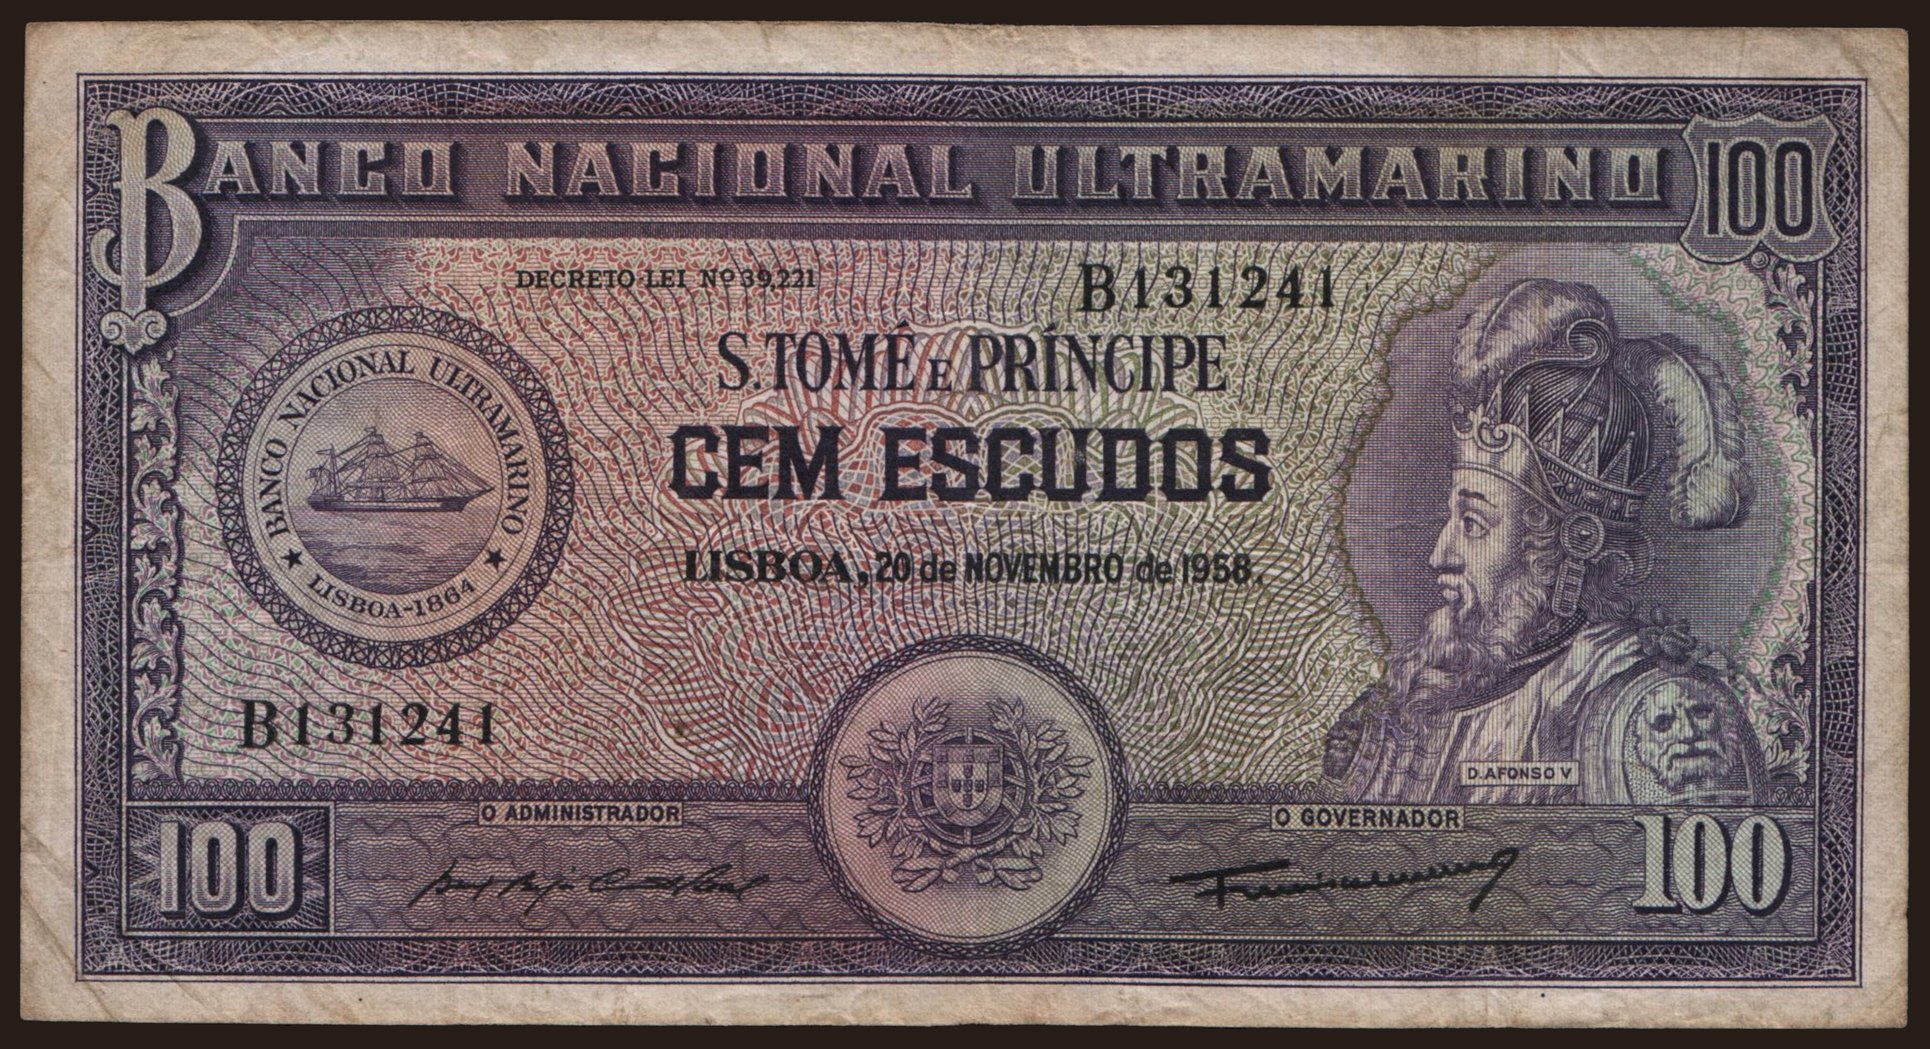 100 escudos, 1958